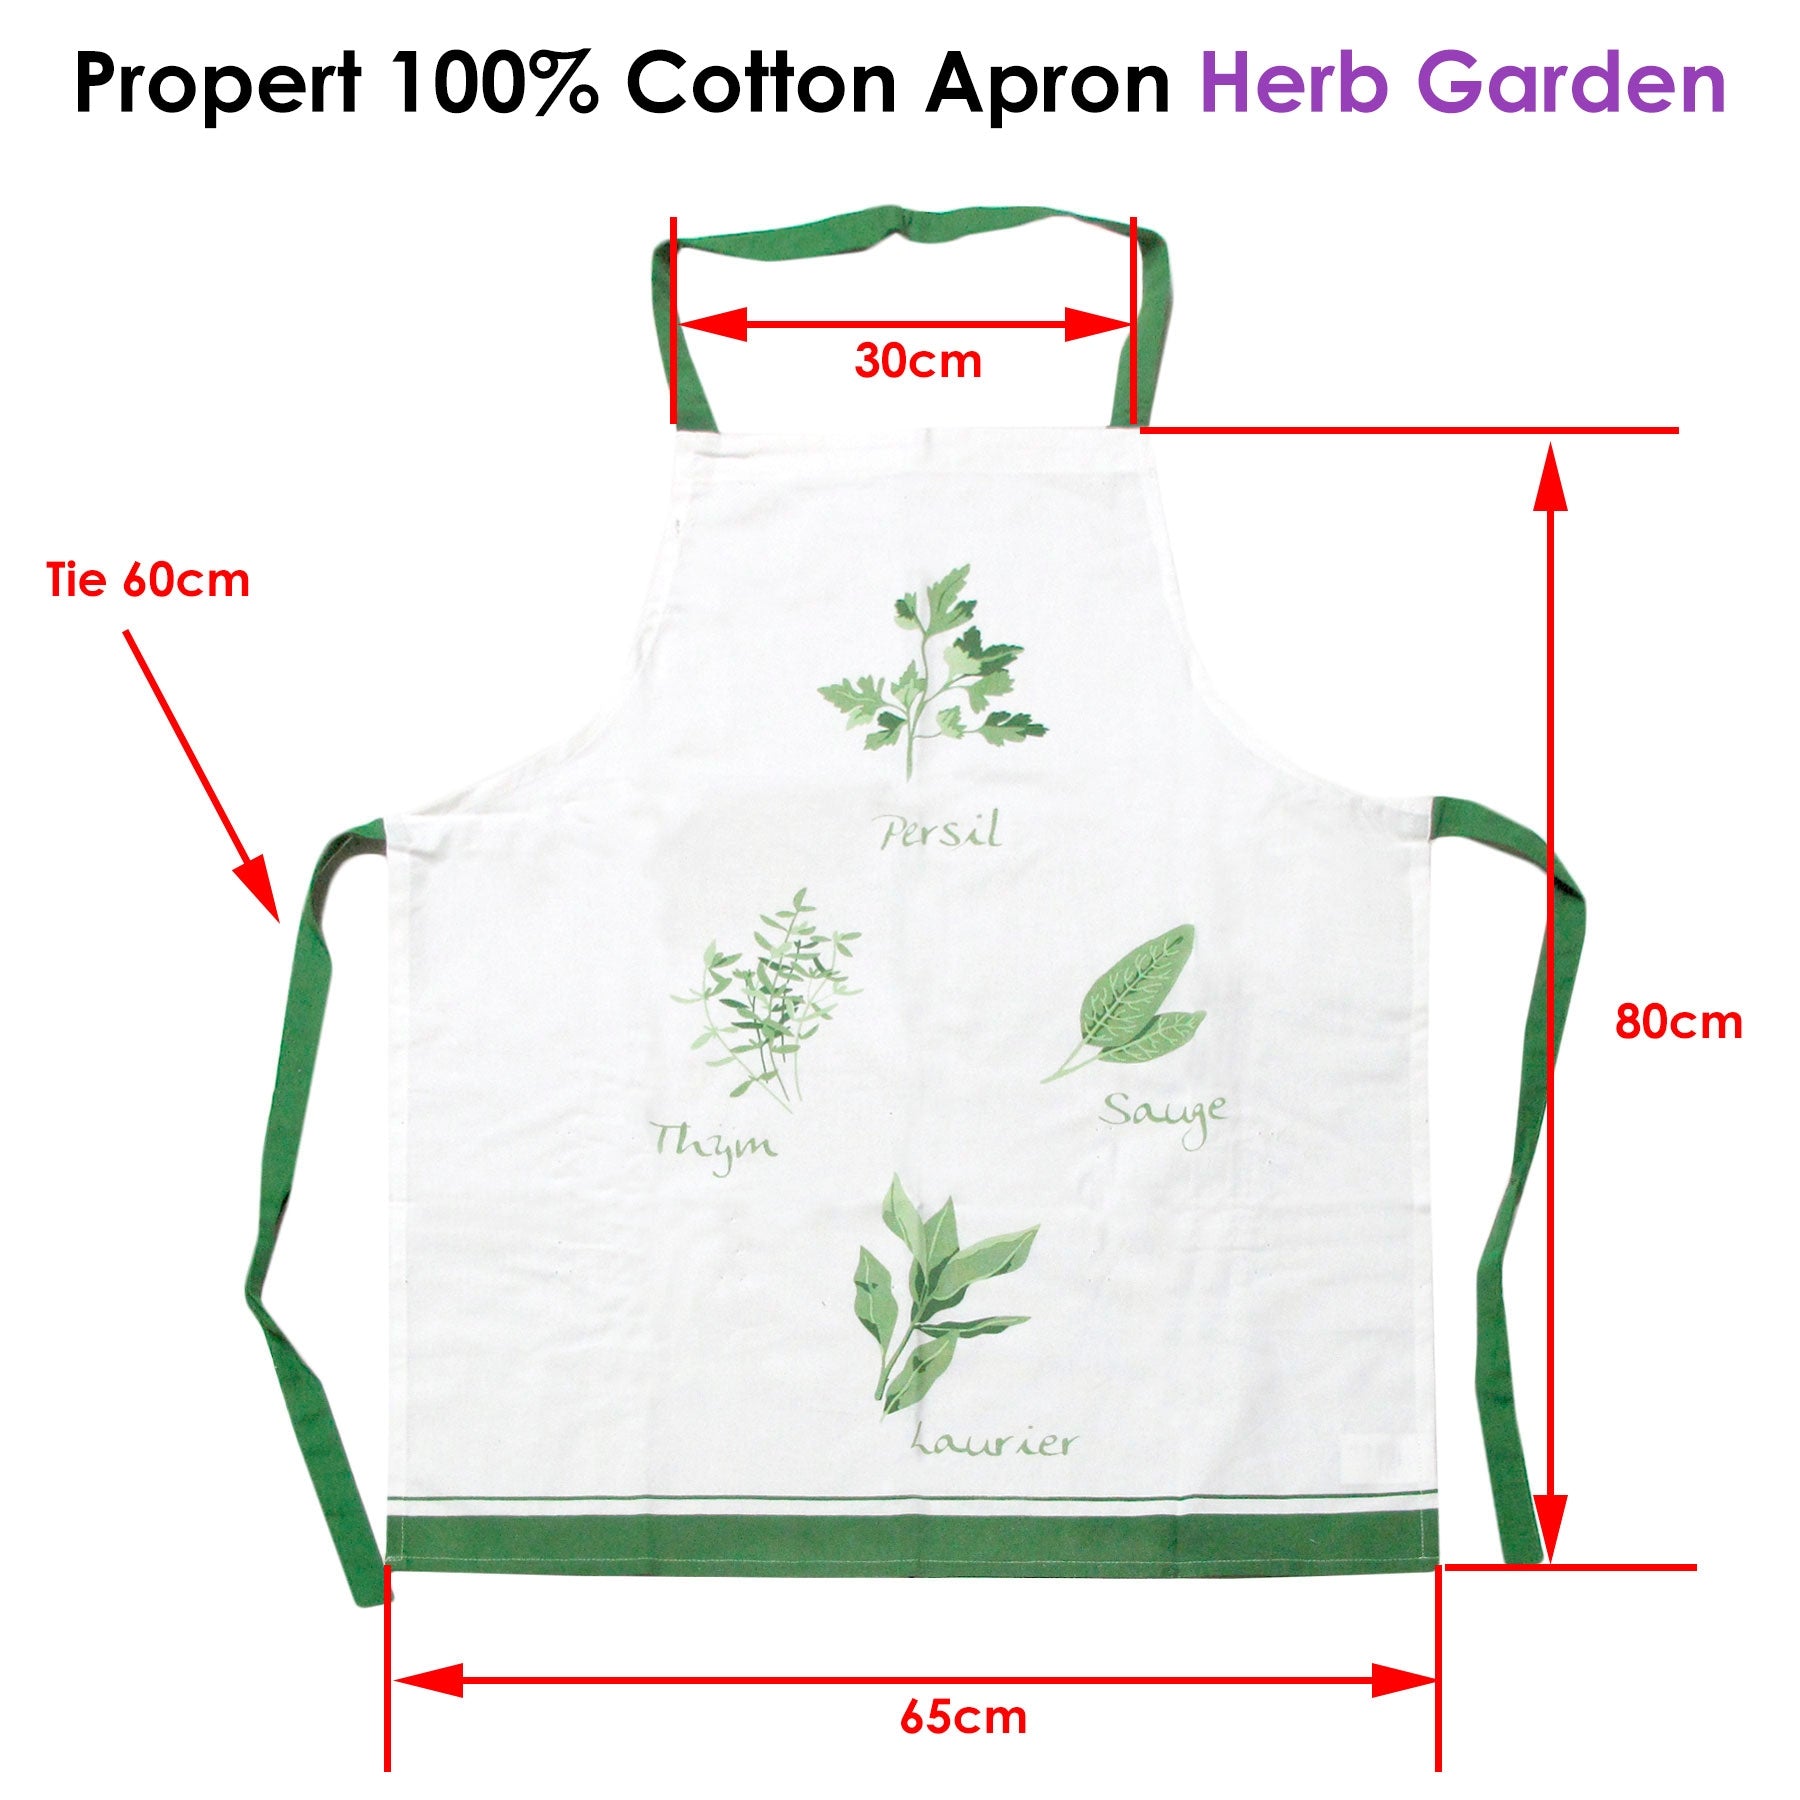 Propert Apron Herb Garden